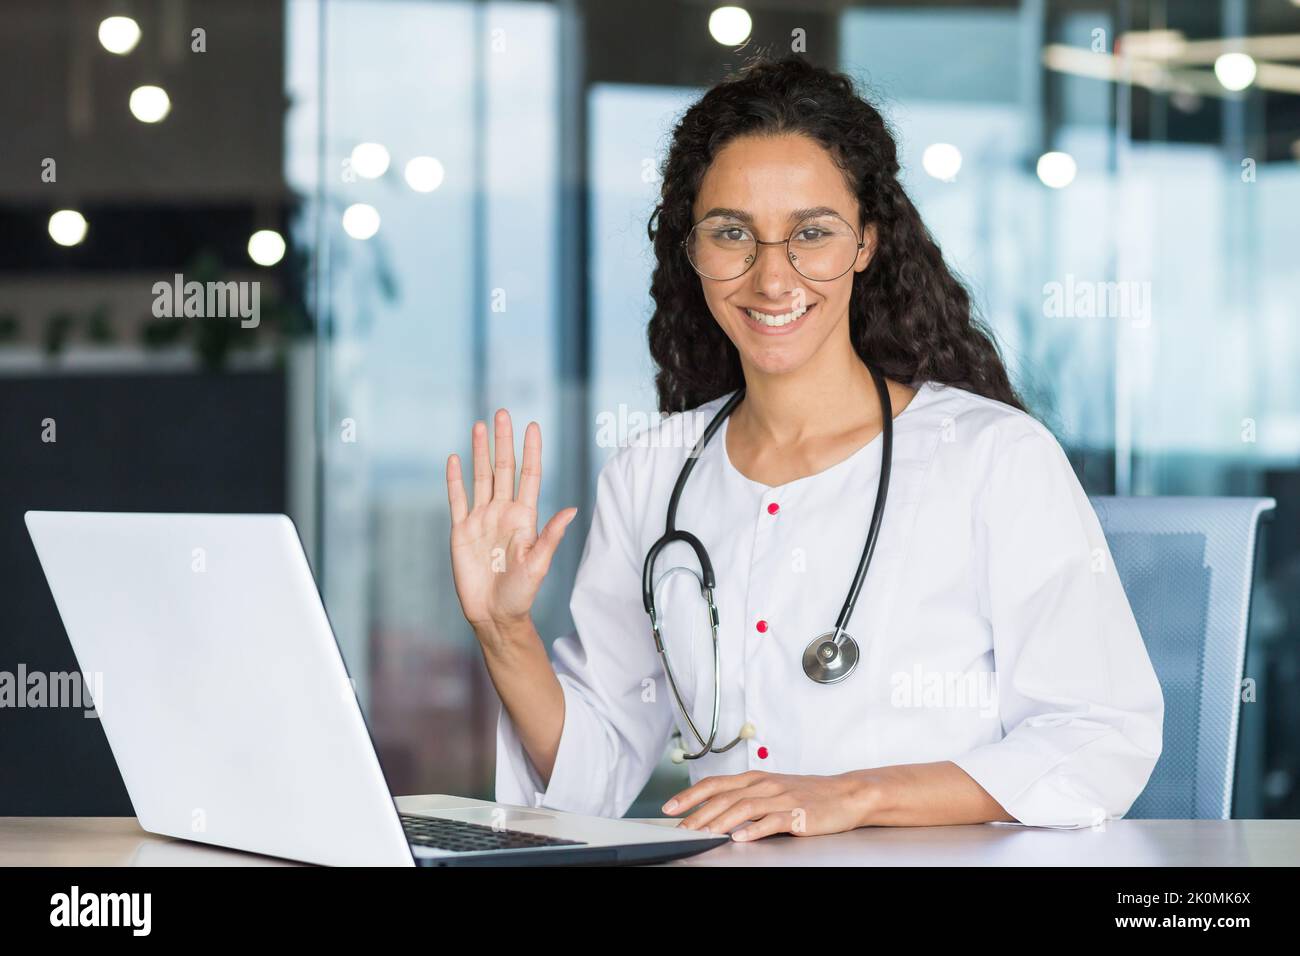 Porträt einer jungen professionellen lateinamerikanischen Ärztin in einem weißen medizinischen Mantel lächelnd und in die Kamera schauend, hält die Ärztin ihre Hand hoch und grüßt sie Stockfoto